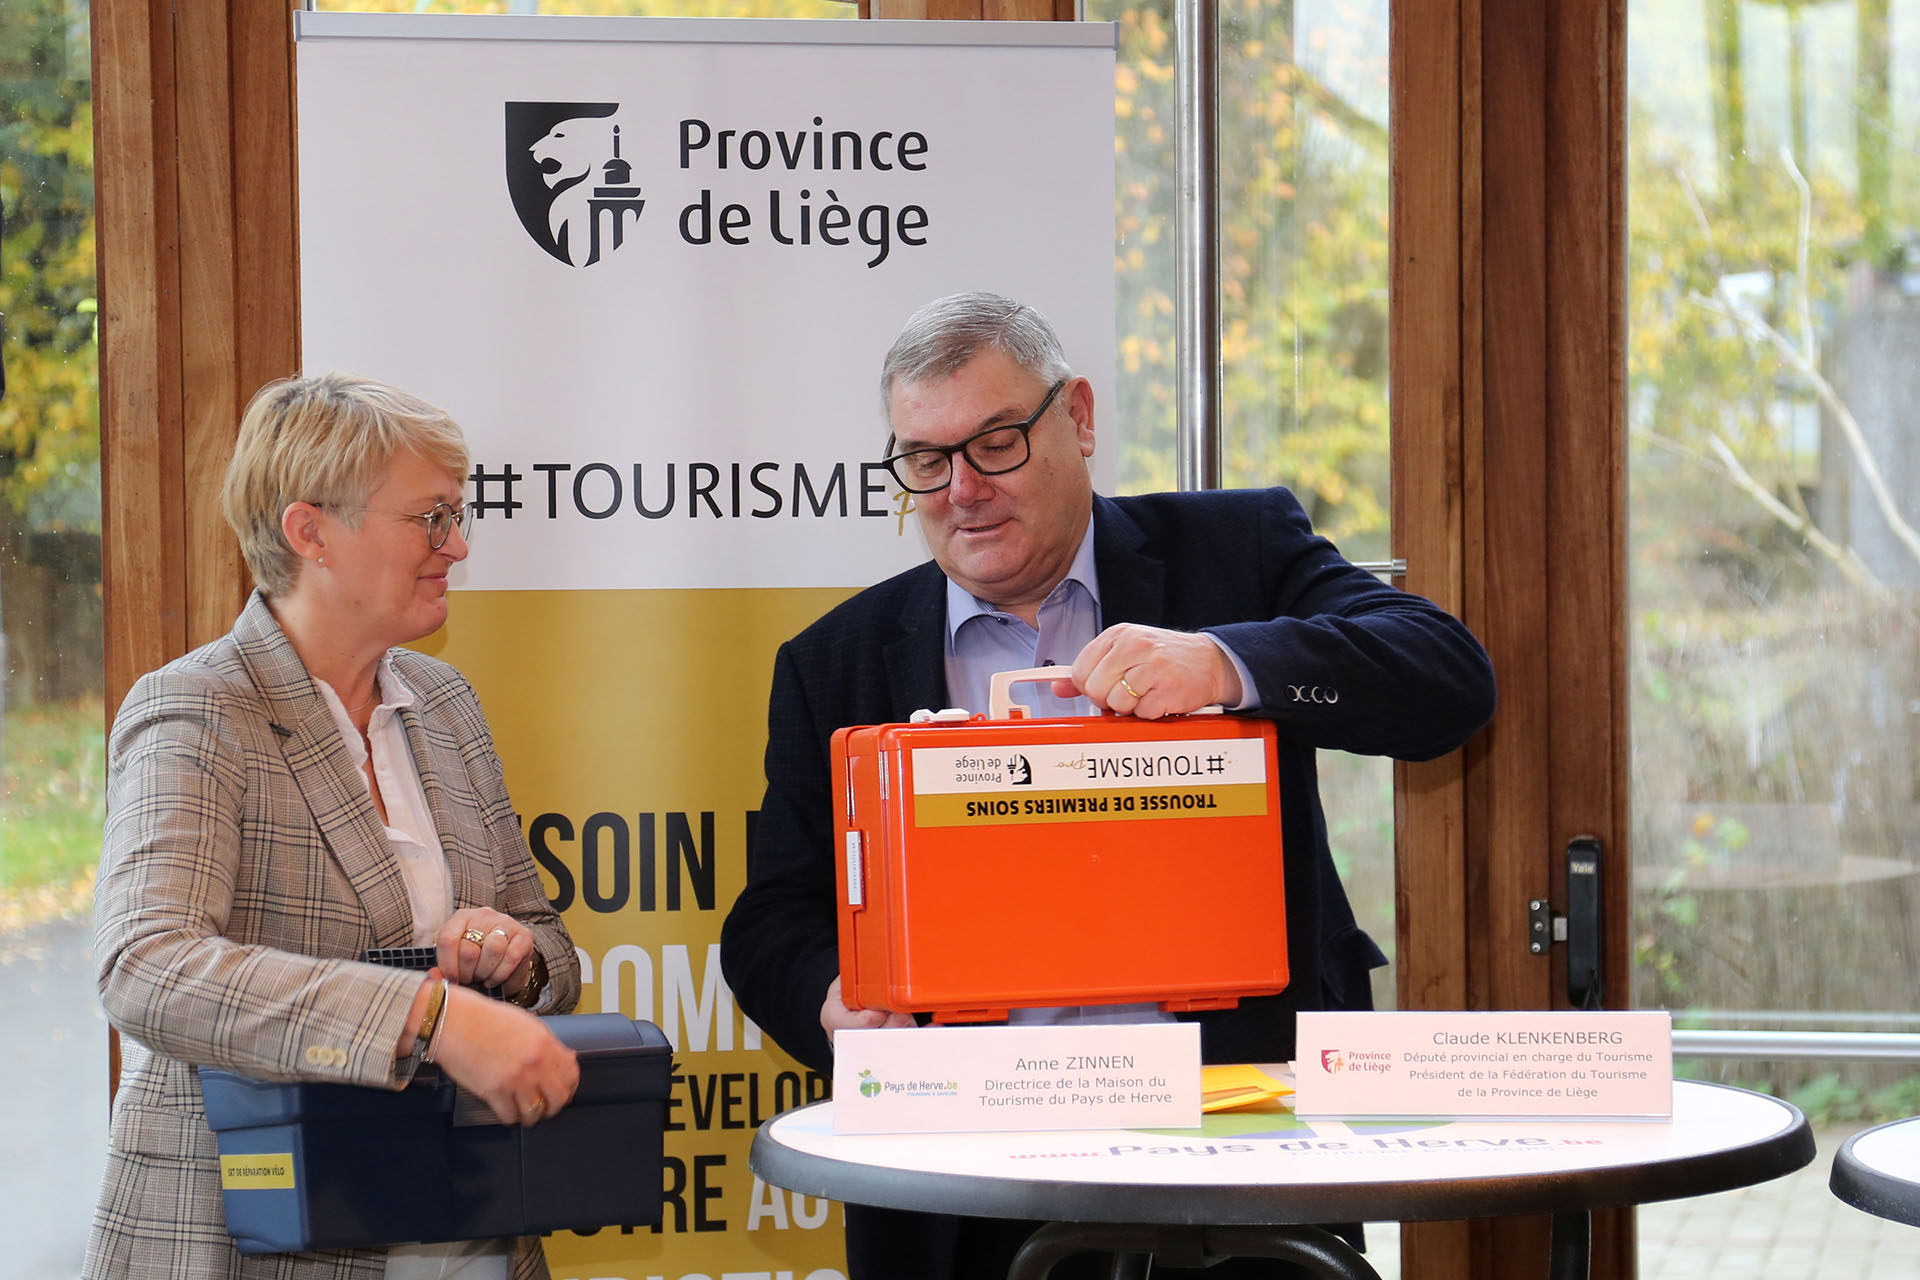 Distribution des kits Bienvenue Vélo, en présence de Monsieur Klenkenberg, Député provincial